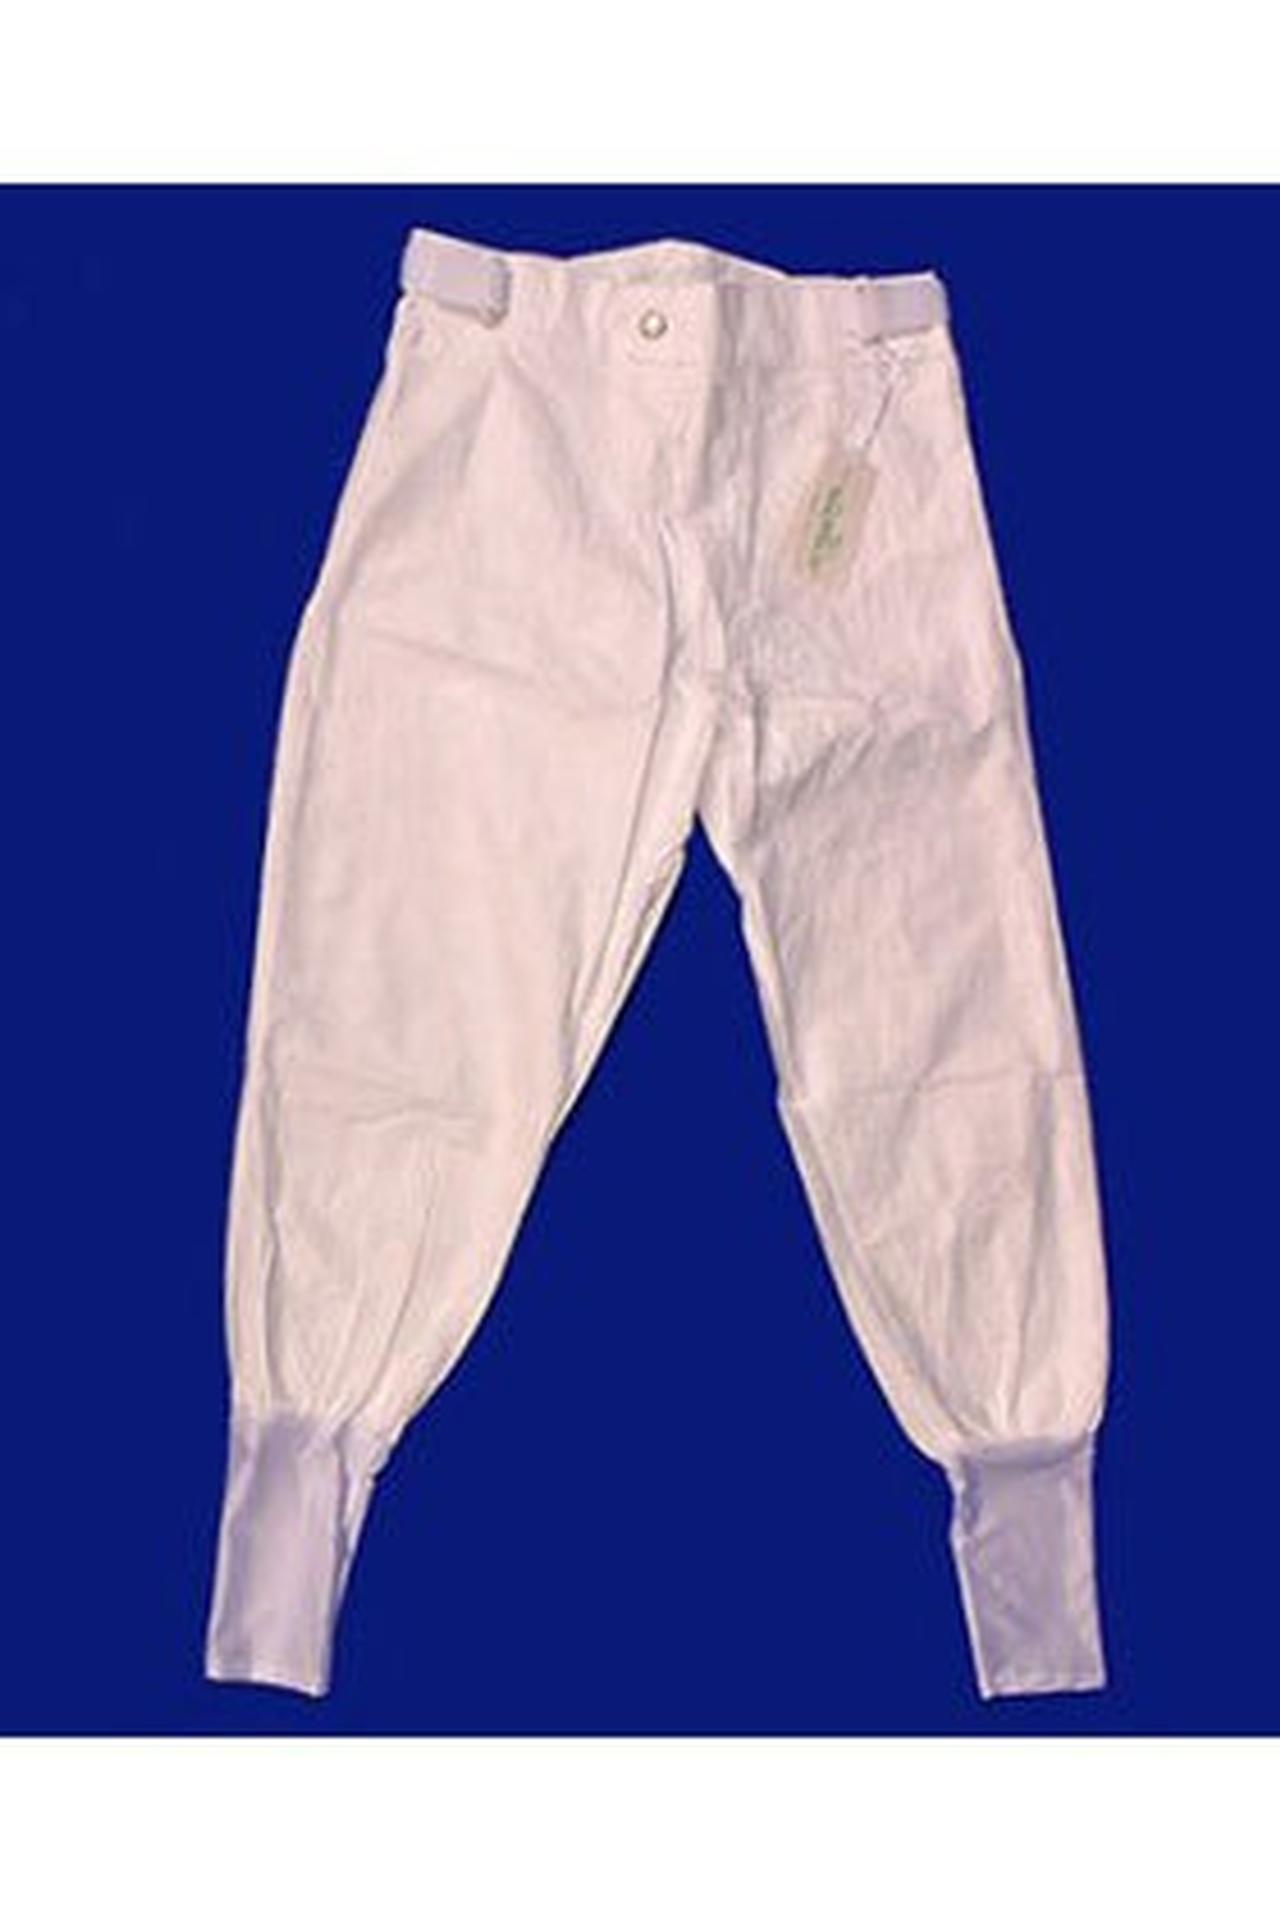 Jockey 2305T Classic Men's Elastic Waist Tall Scrub Pants